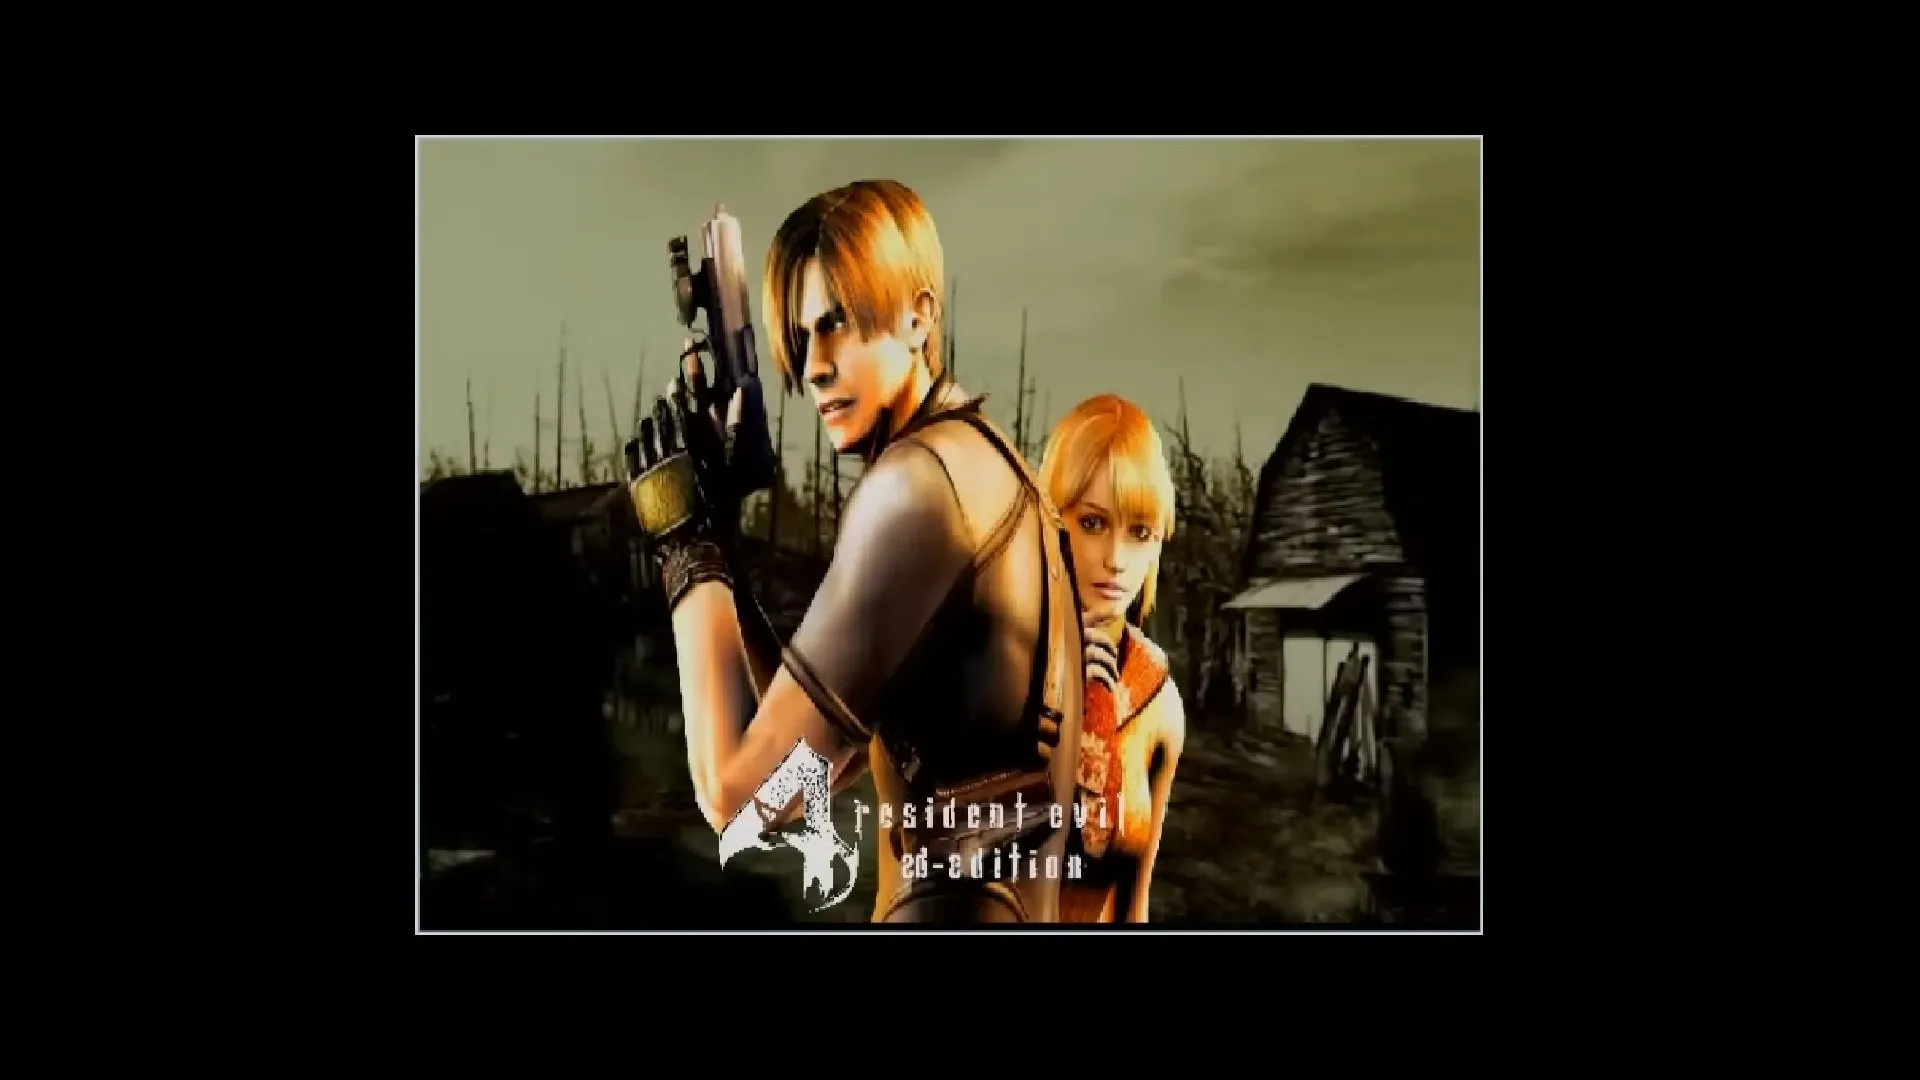 Resident Evil 4 2D demake